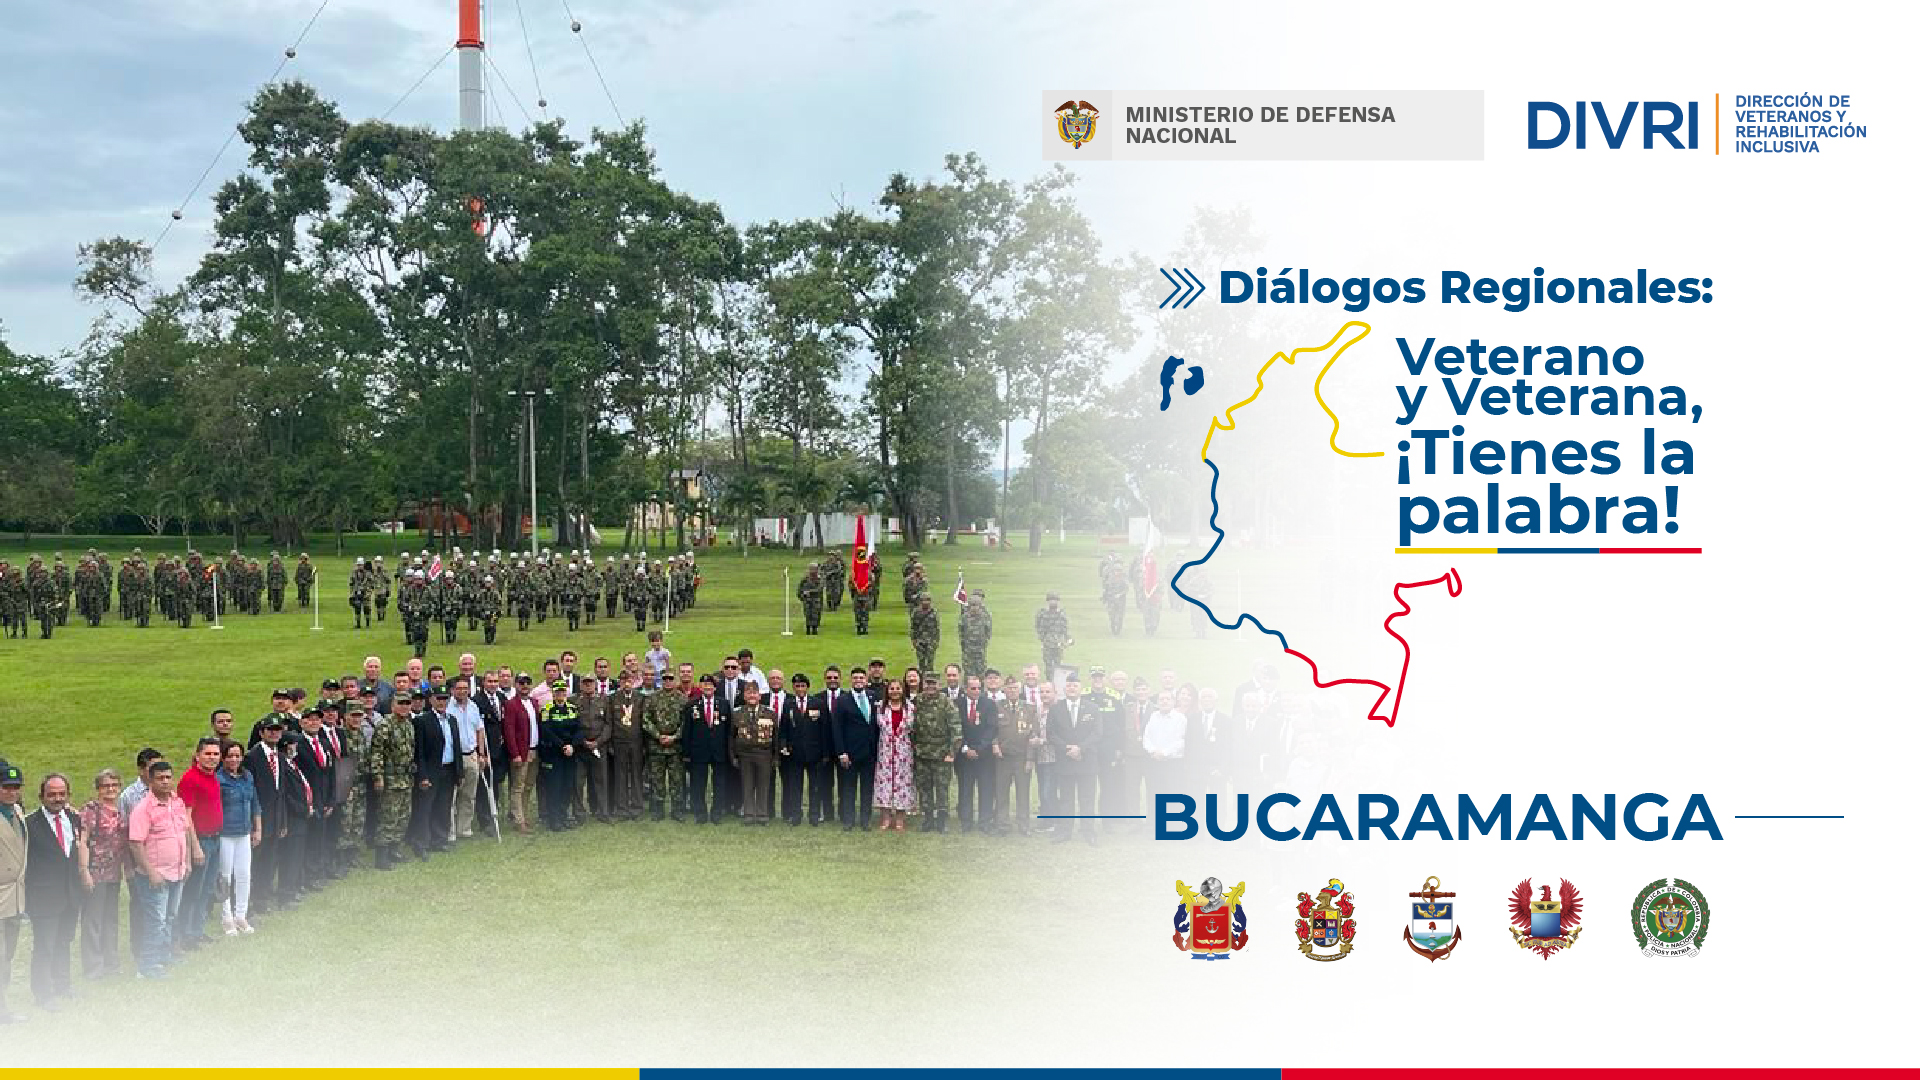 Diálogos Regionales: Veterano y Veterana, ¡tienes la palabra! - Bucaramanga